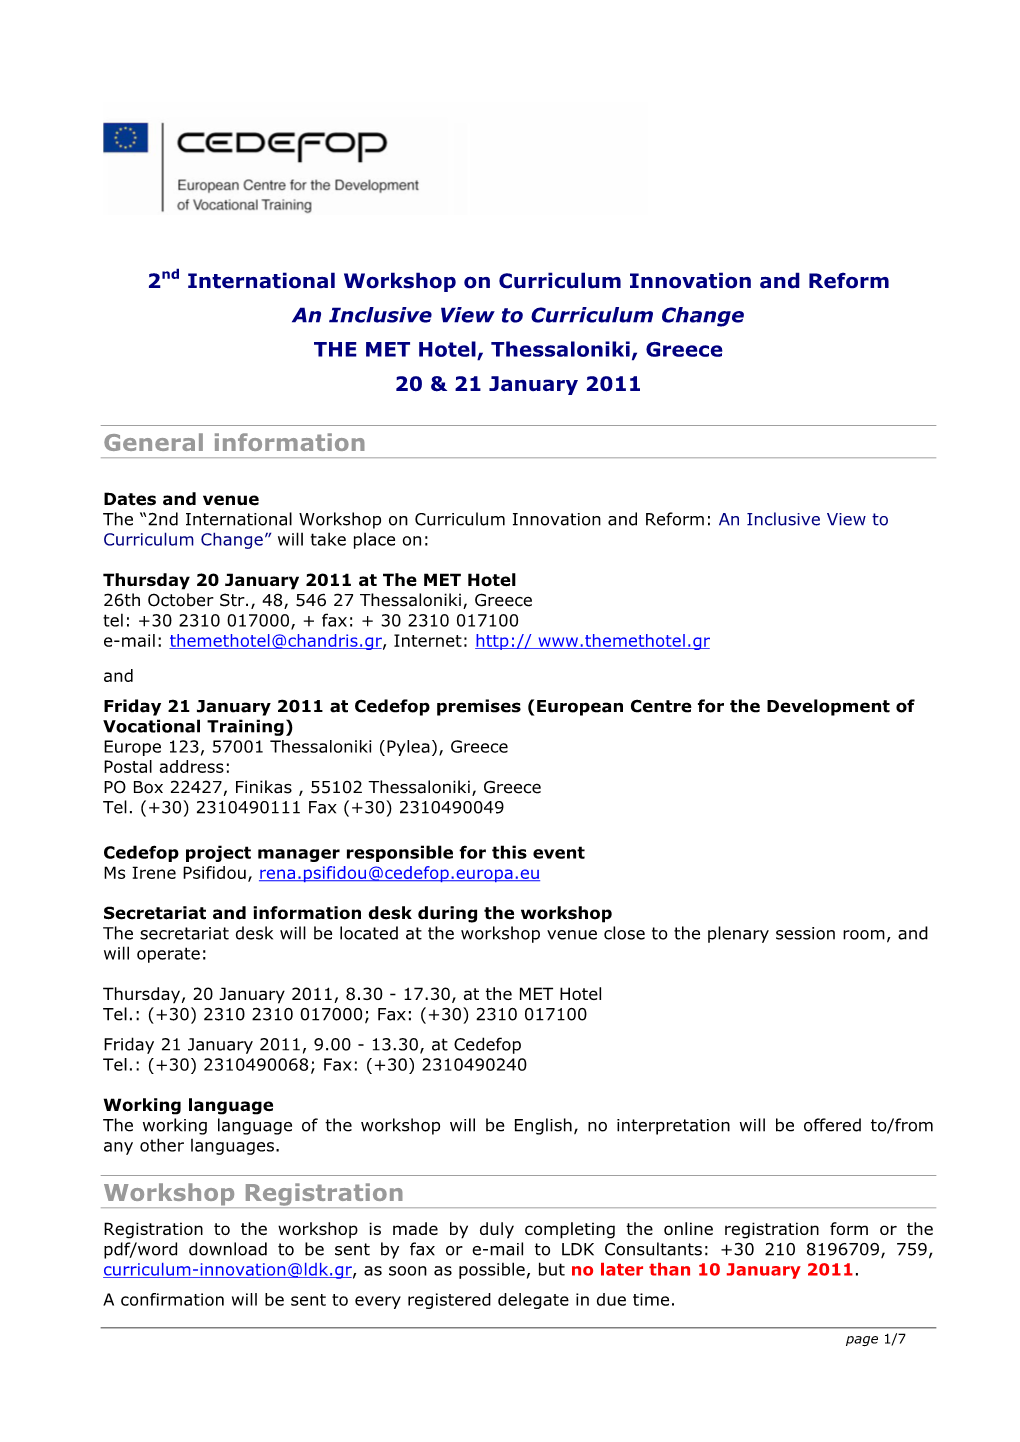 General Information Workshop Registration